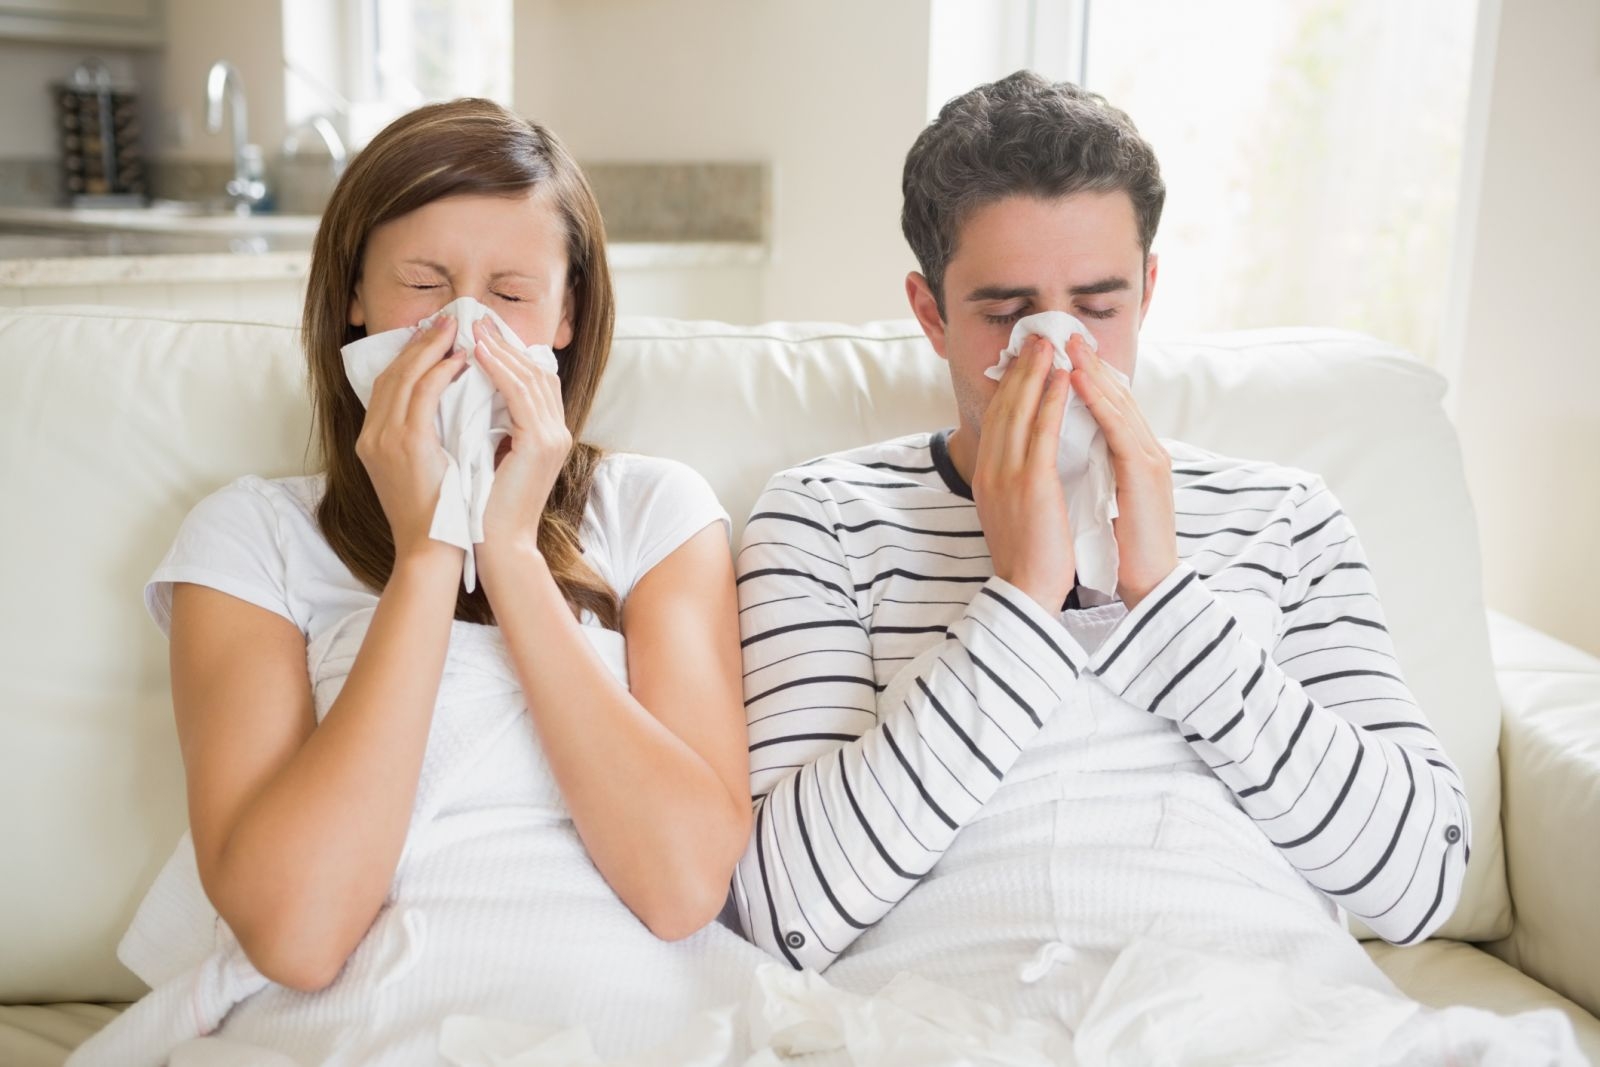 Эксперты: простудные заболевания вам не грозят, если вы следуете особым правилам